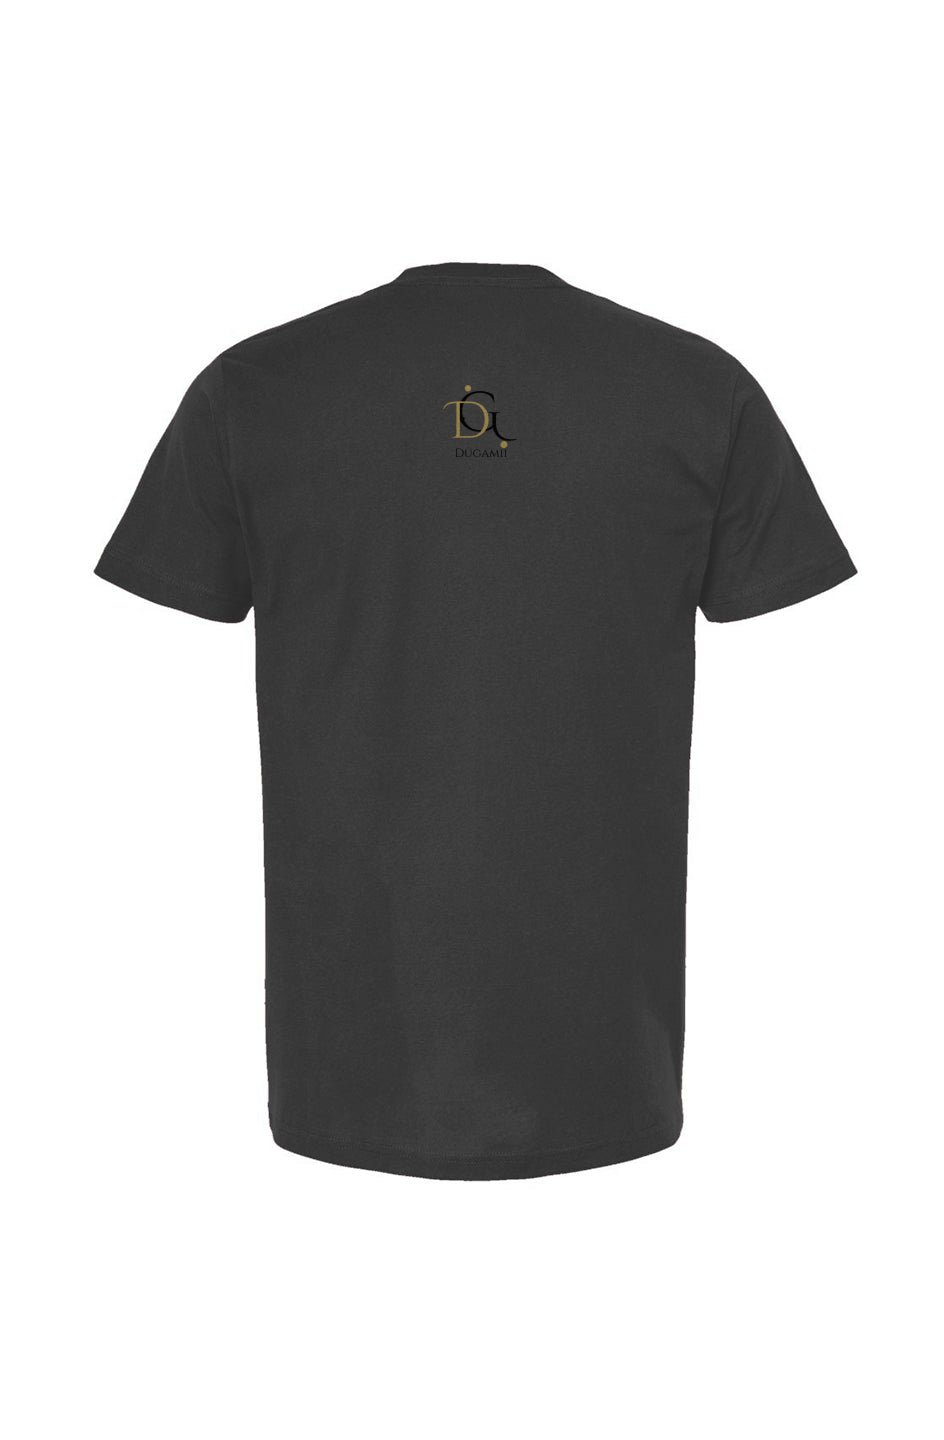 DuGamii Signature Classic Cotton Unisex Coal T Shirt